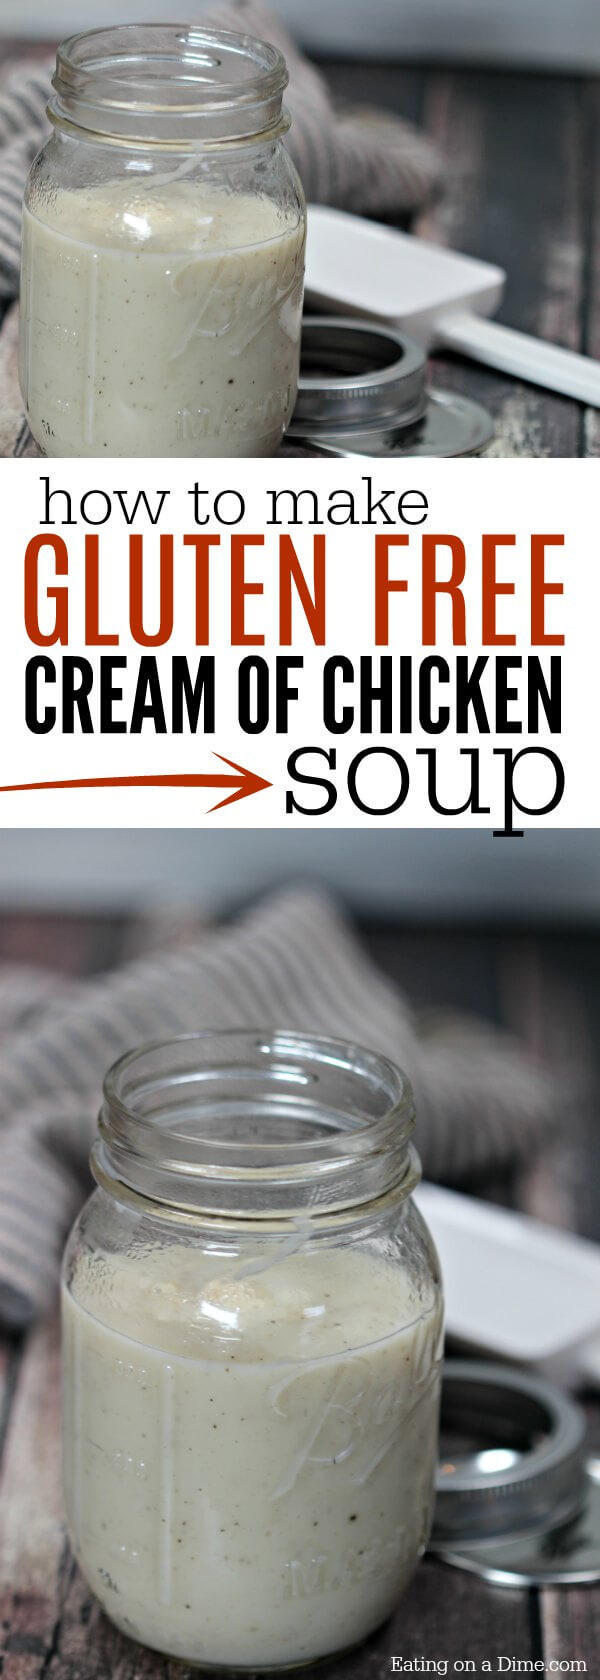 Gluten Free Cream Of Chicken Soup
 Gluten Free Cream of Chicken Soup Recipe Gluten Free